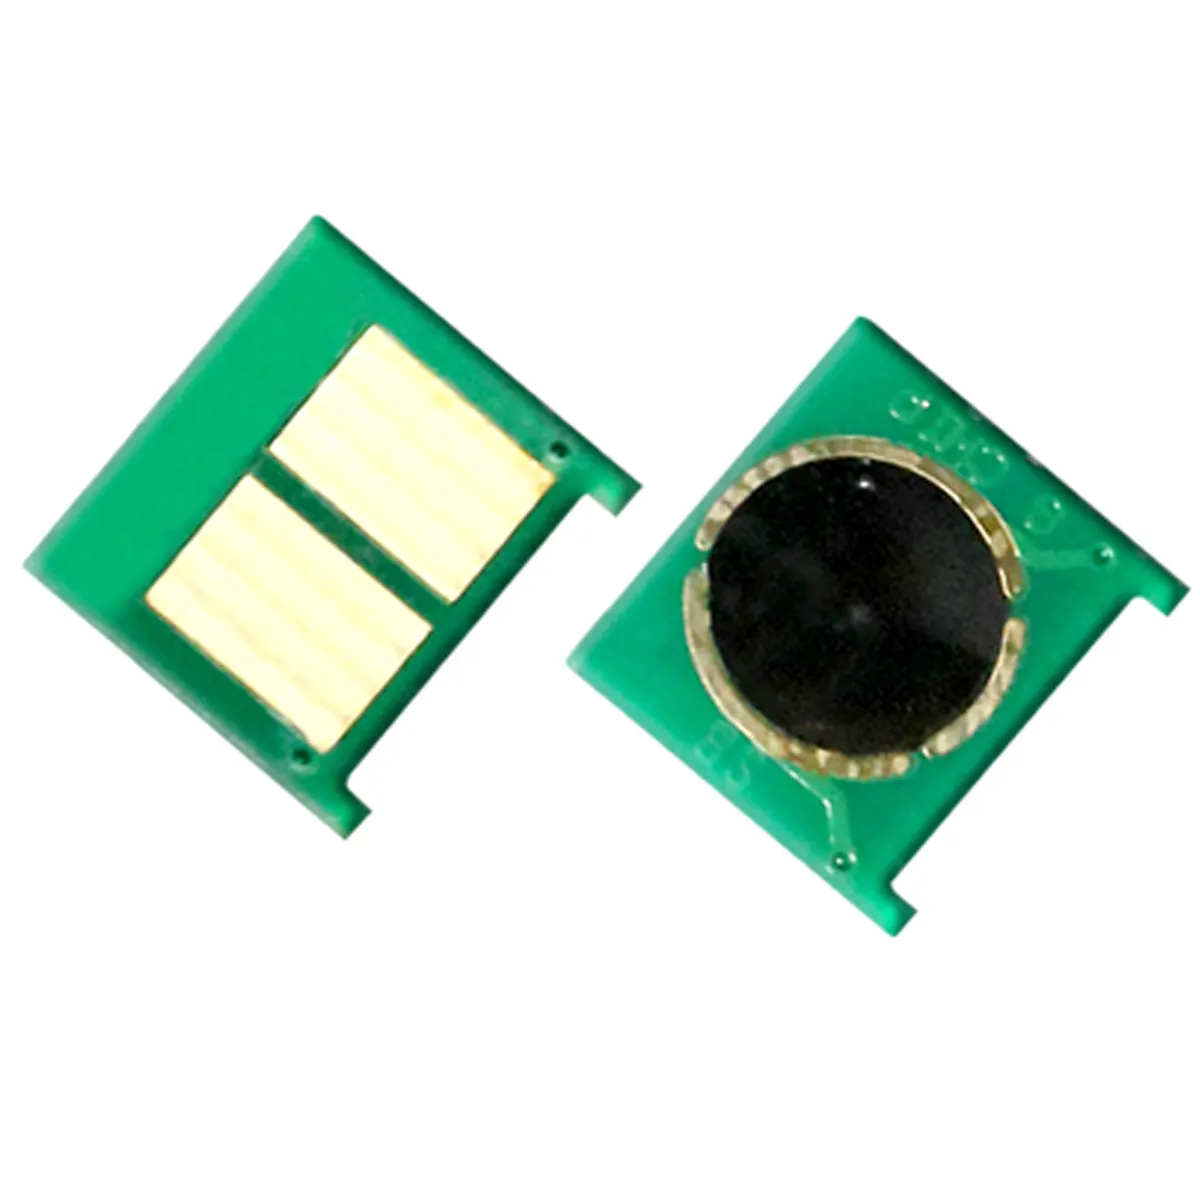 Leere Toner kartuschen chips für HP Color Laser Jet CP4025 4525 4020 Toner chips